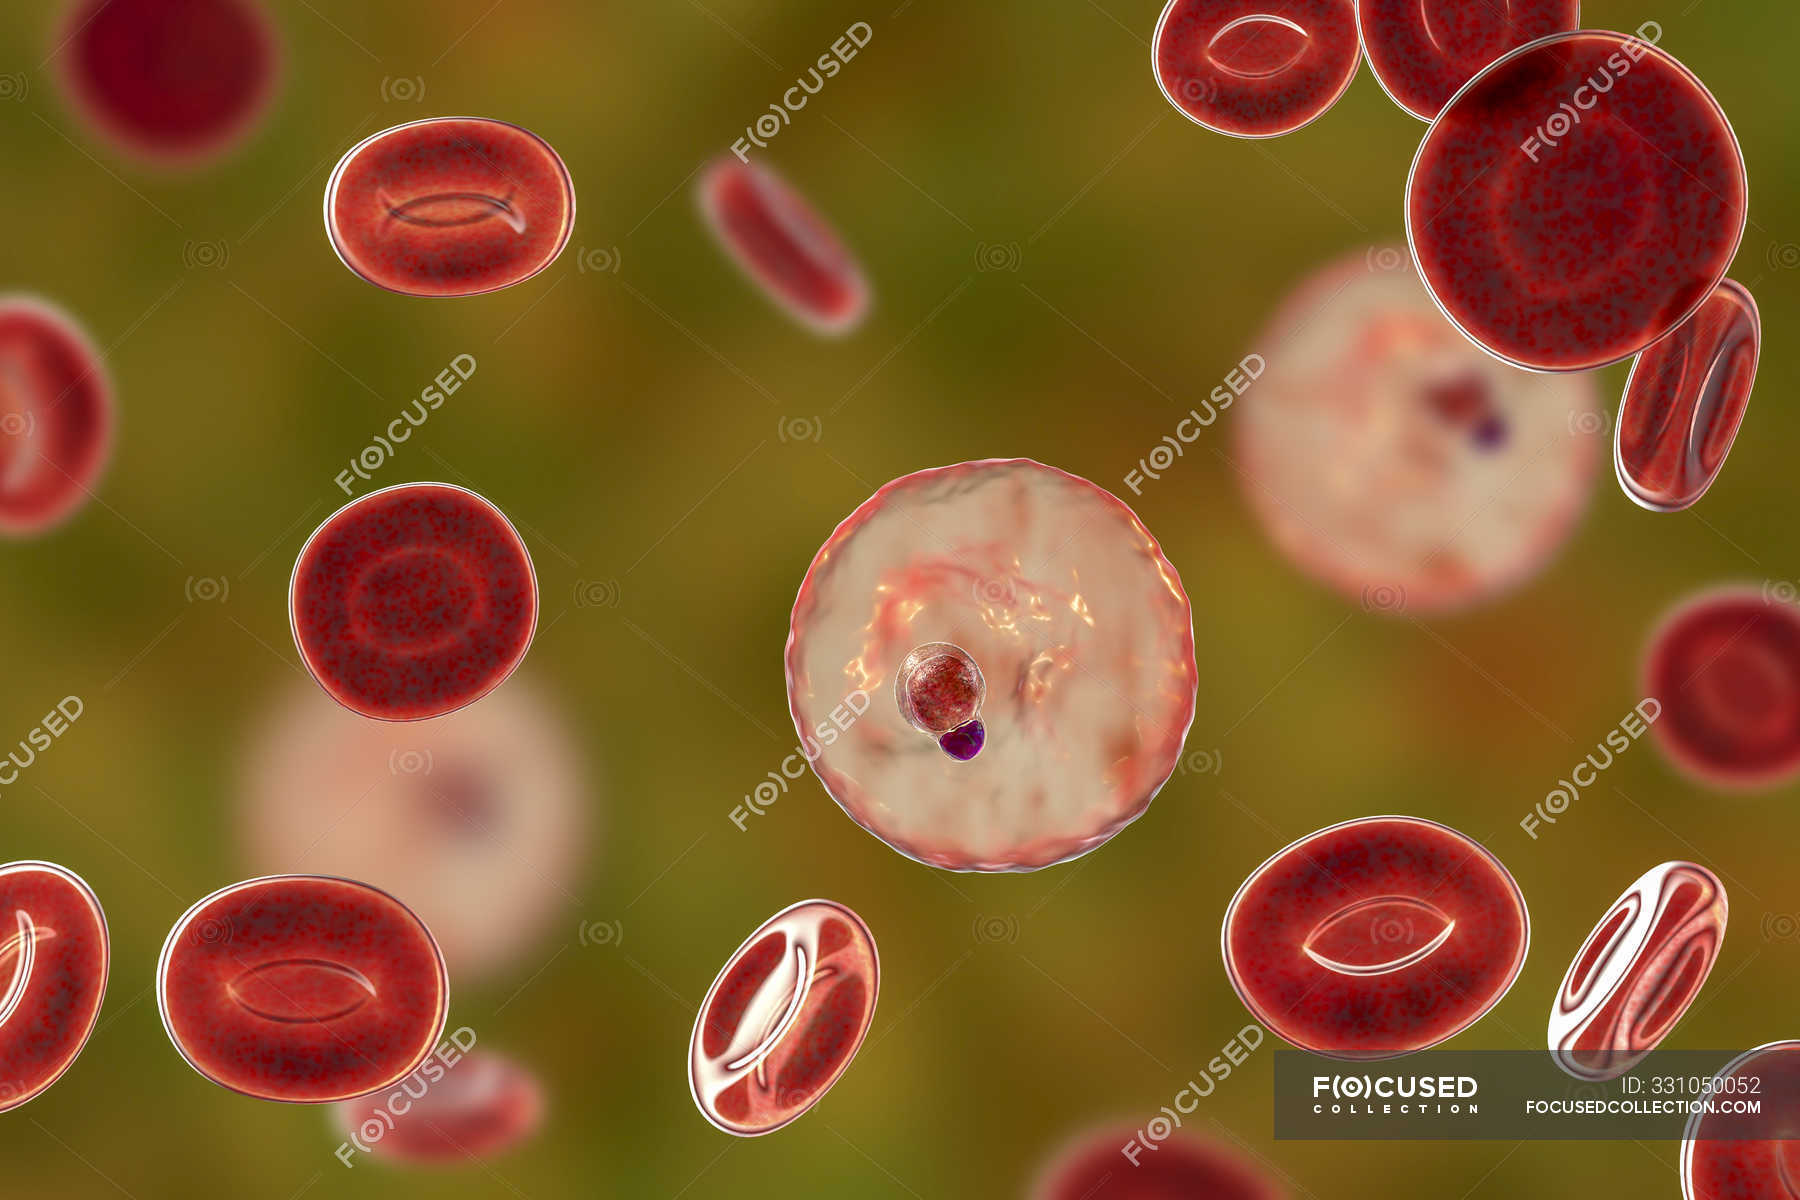 Plasmodium malariae protozoa in blood vessel, computer illustration